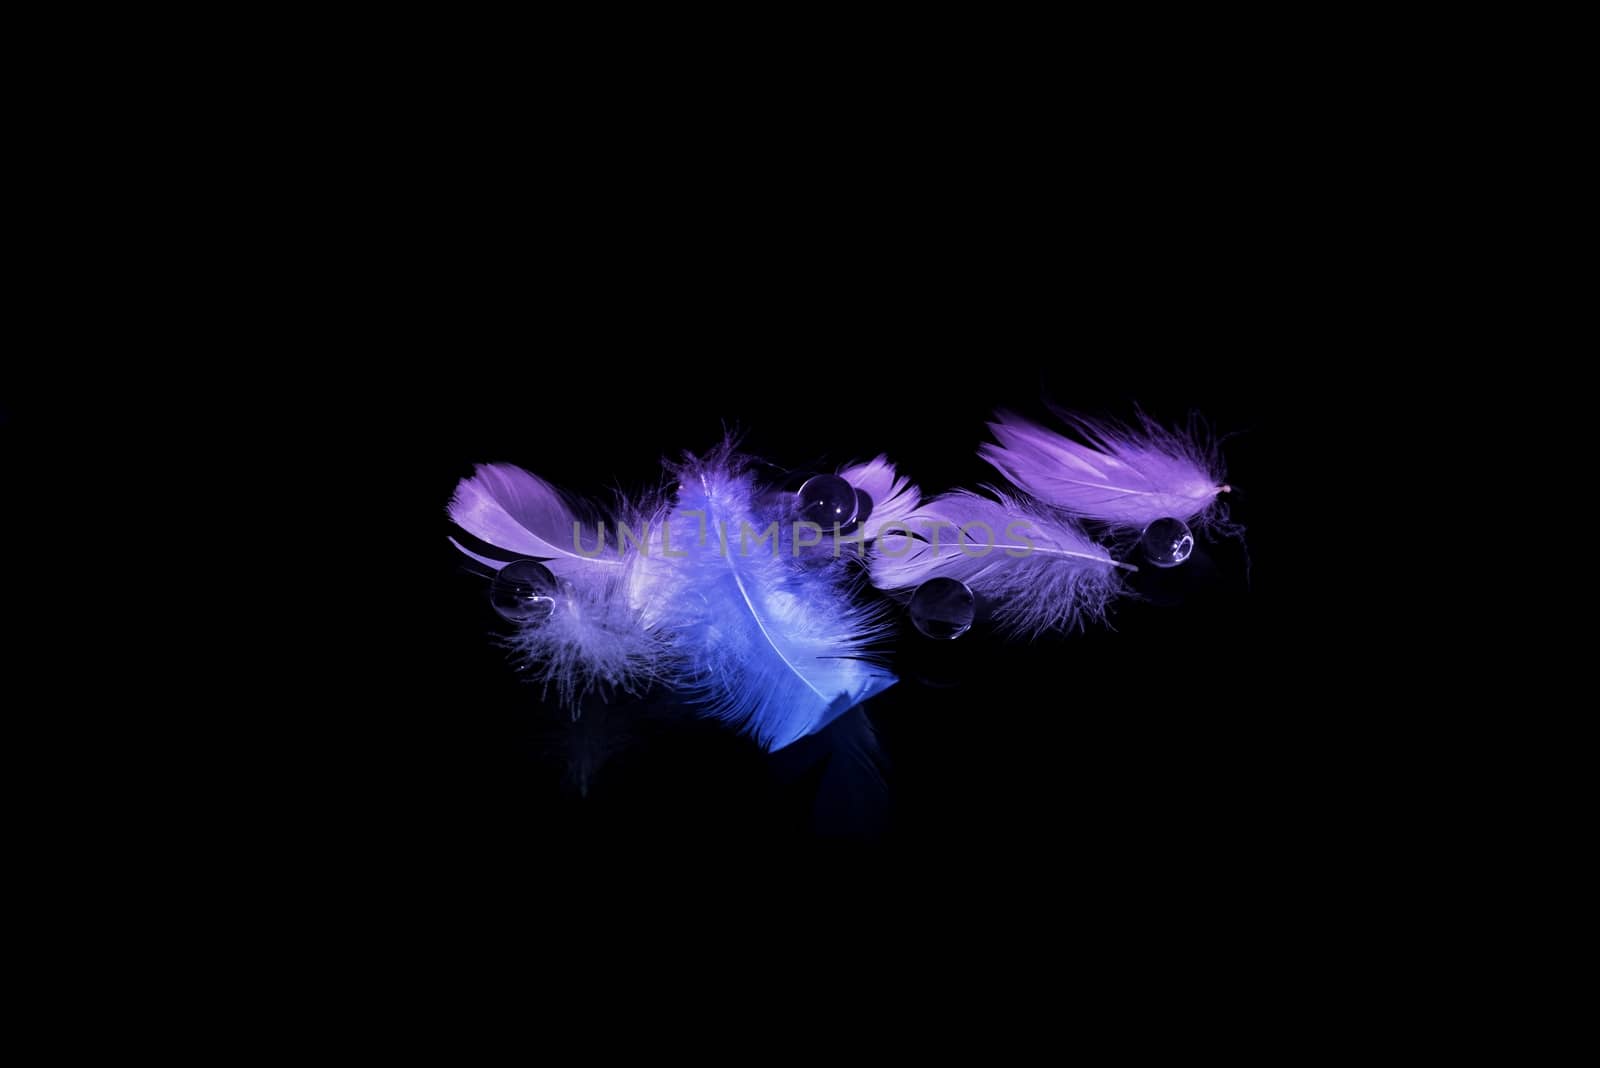 Blured  feather background by stellar